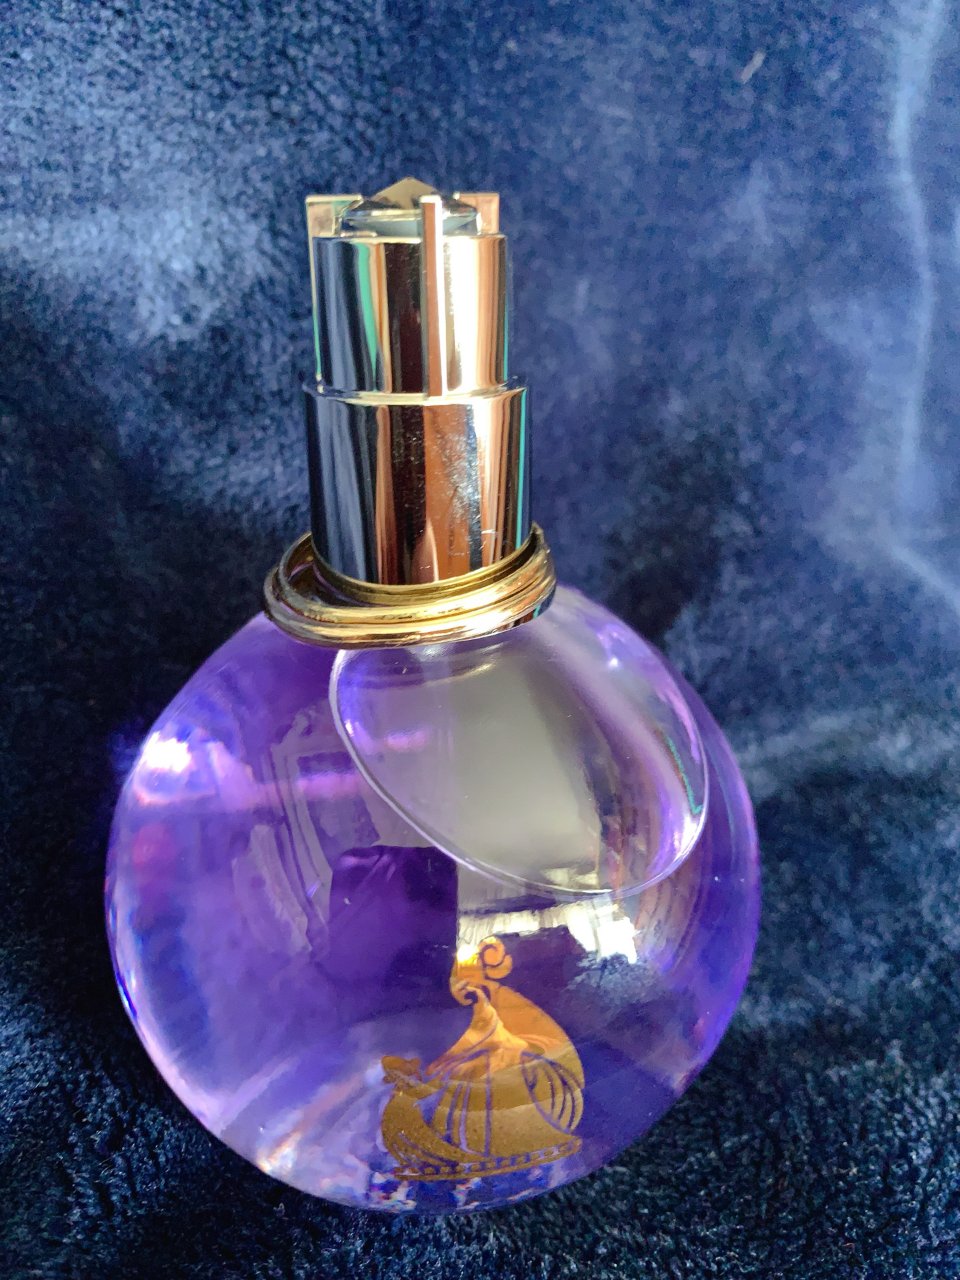 漂亮的淡紫色的香水😍...